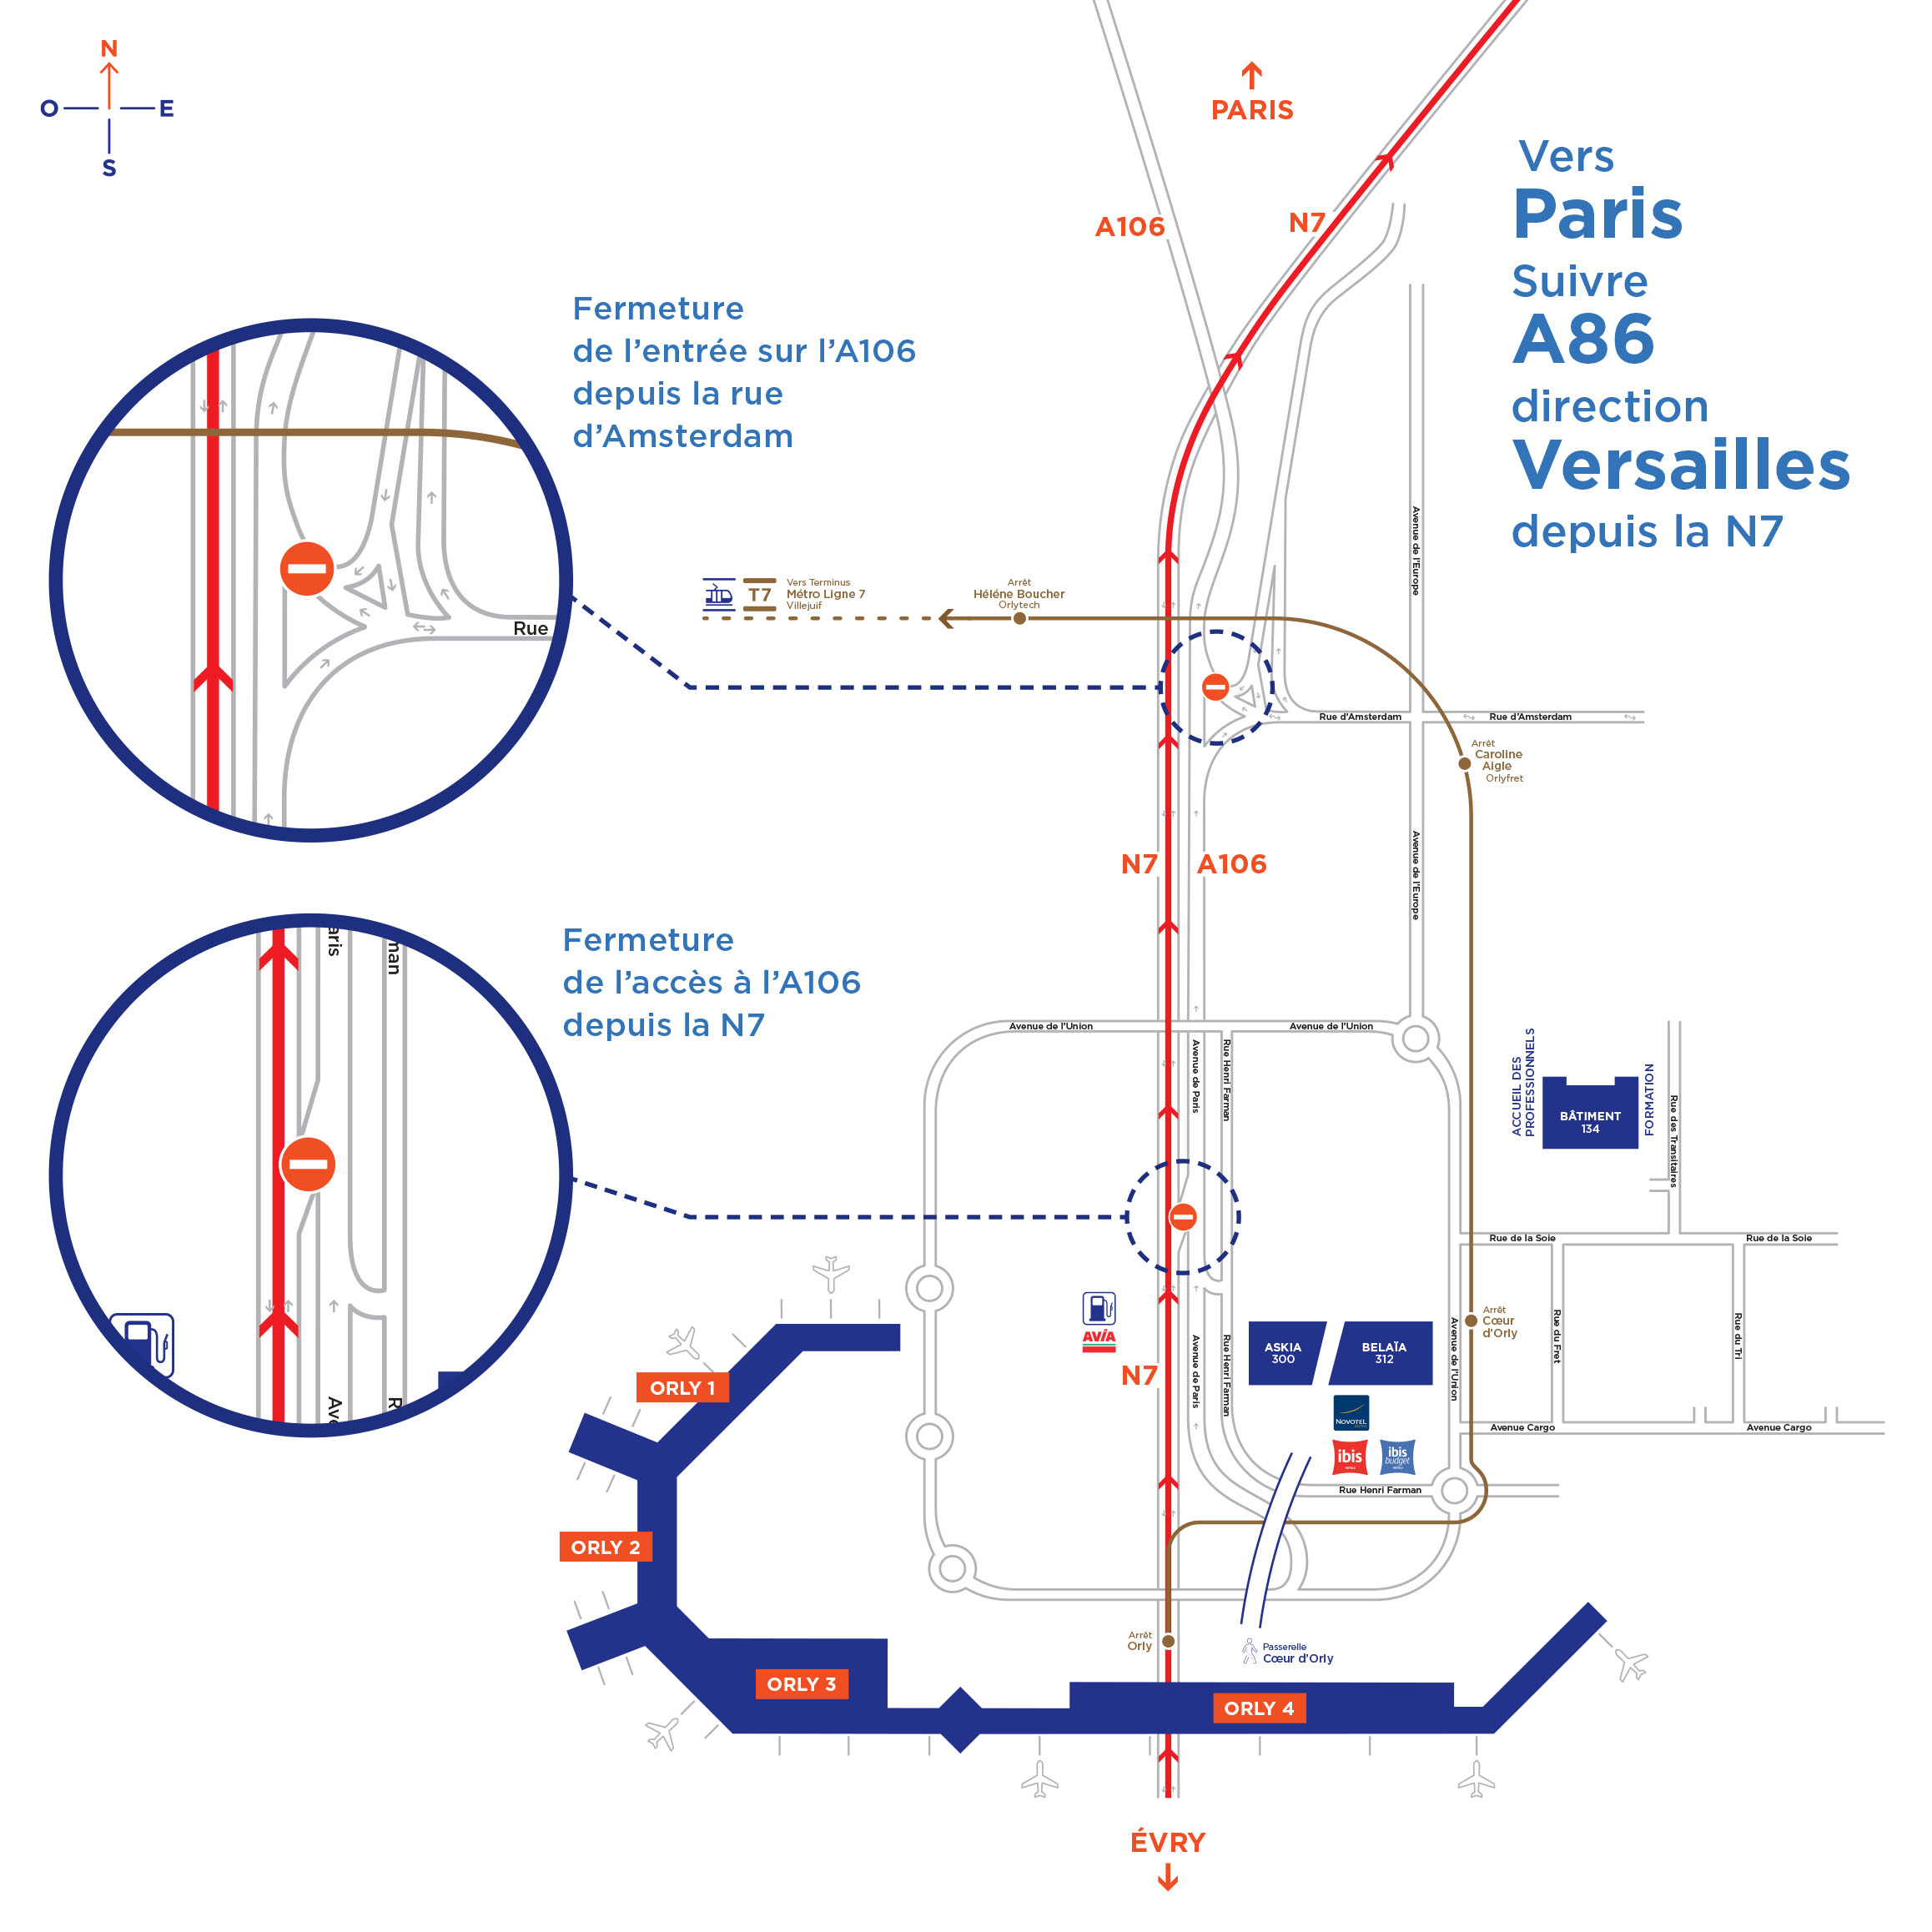 Paris-Orly : fermeture de la piste 4 (06/24) du 9 au 13 août 2021 pour  travaux du taxiway W42 - Groupe ADP - Entre voisins